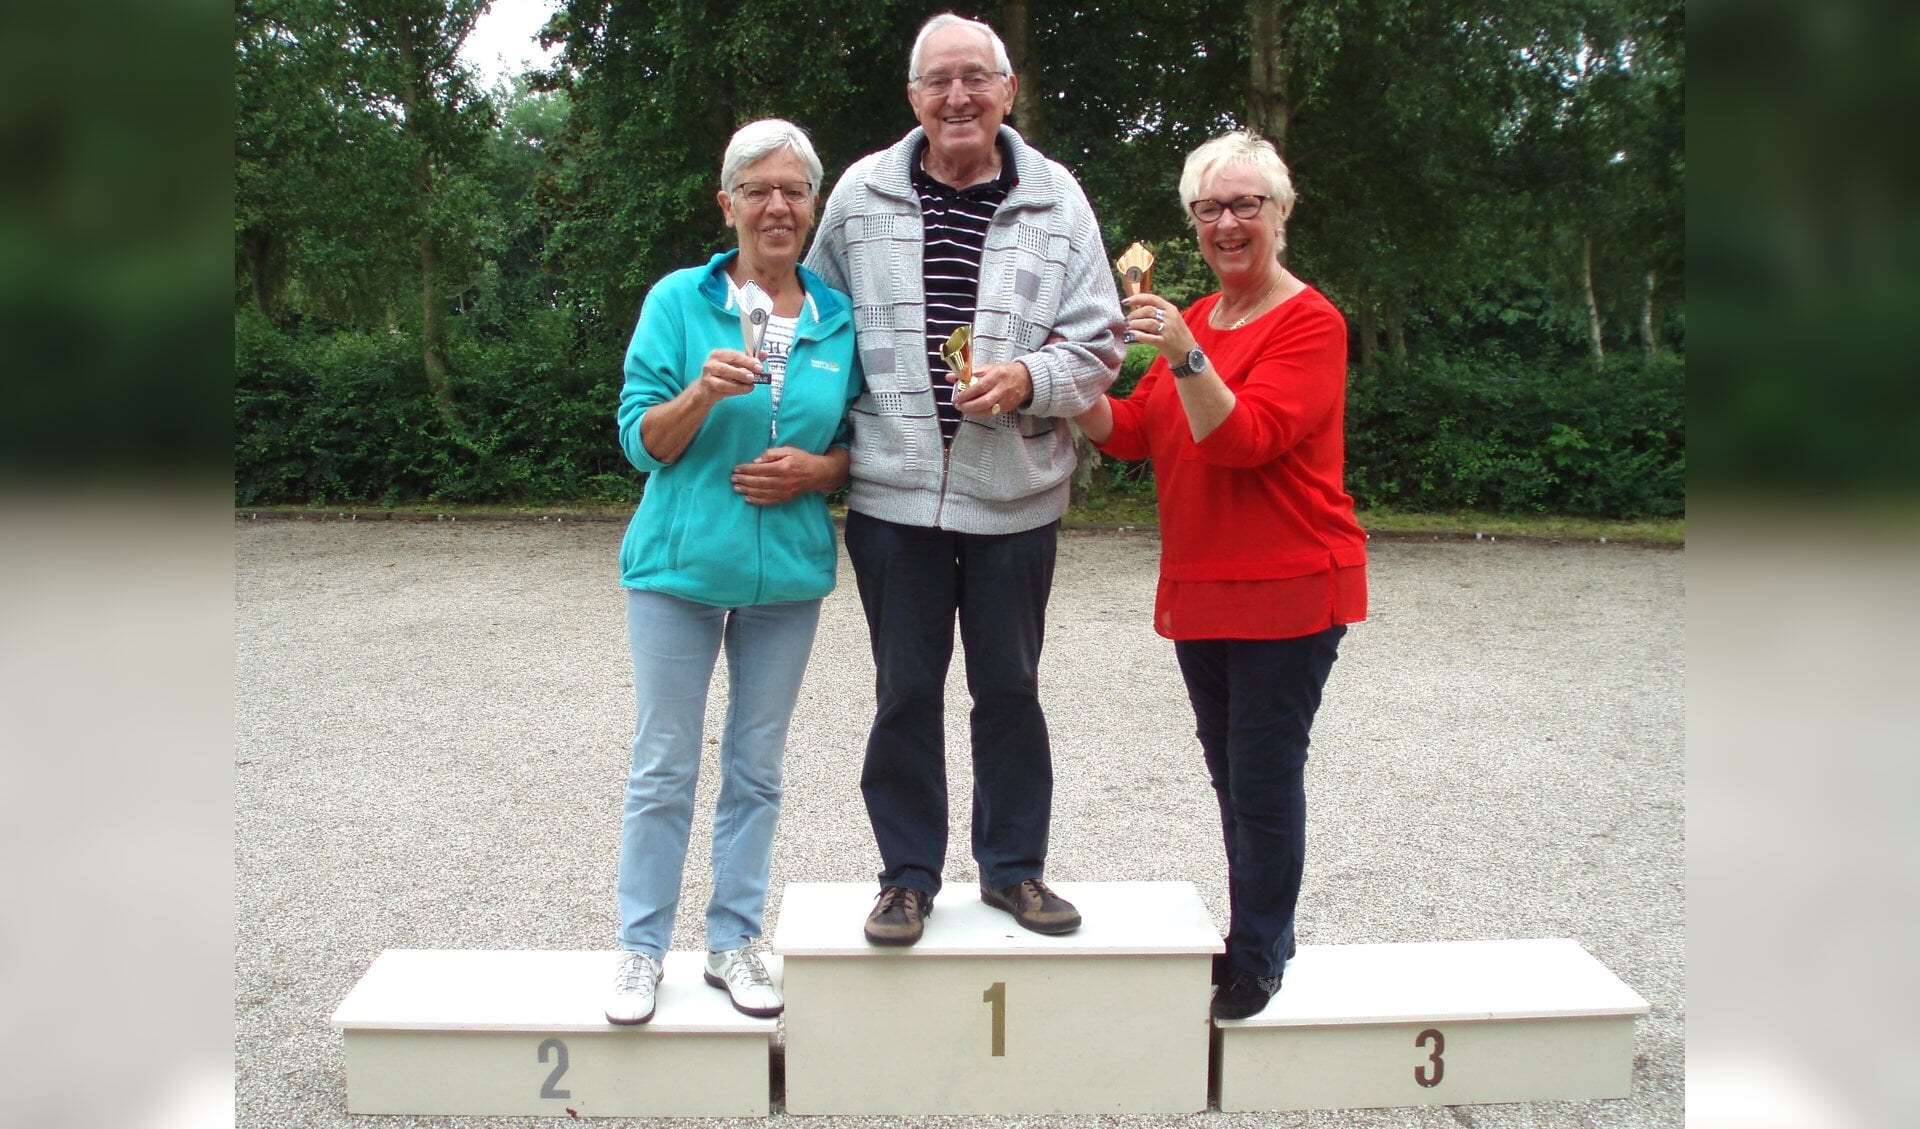 Winnaars, Truus Jongedijk 2de, Kees de Weerd 1ste en Marianne van Roon 3de